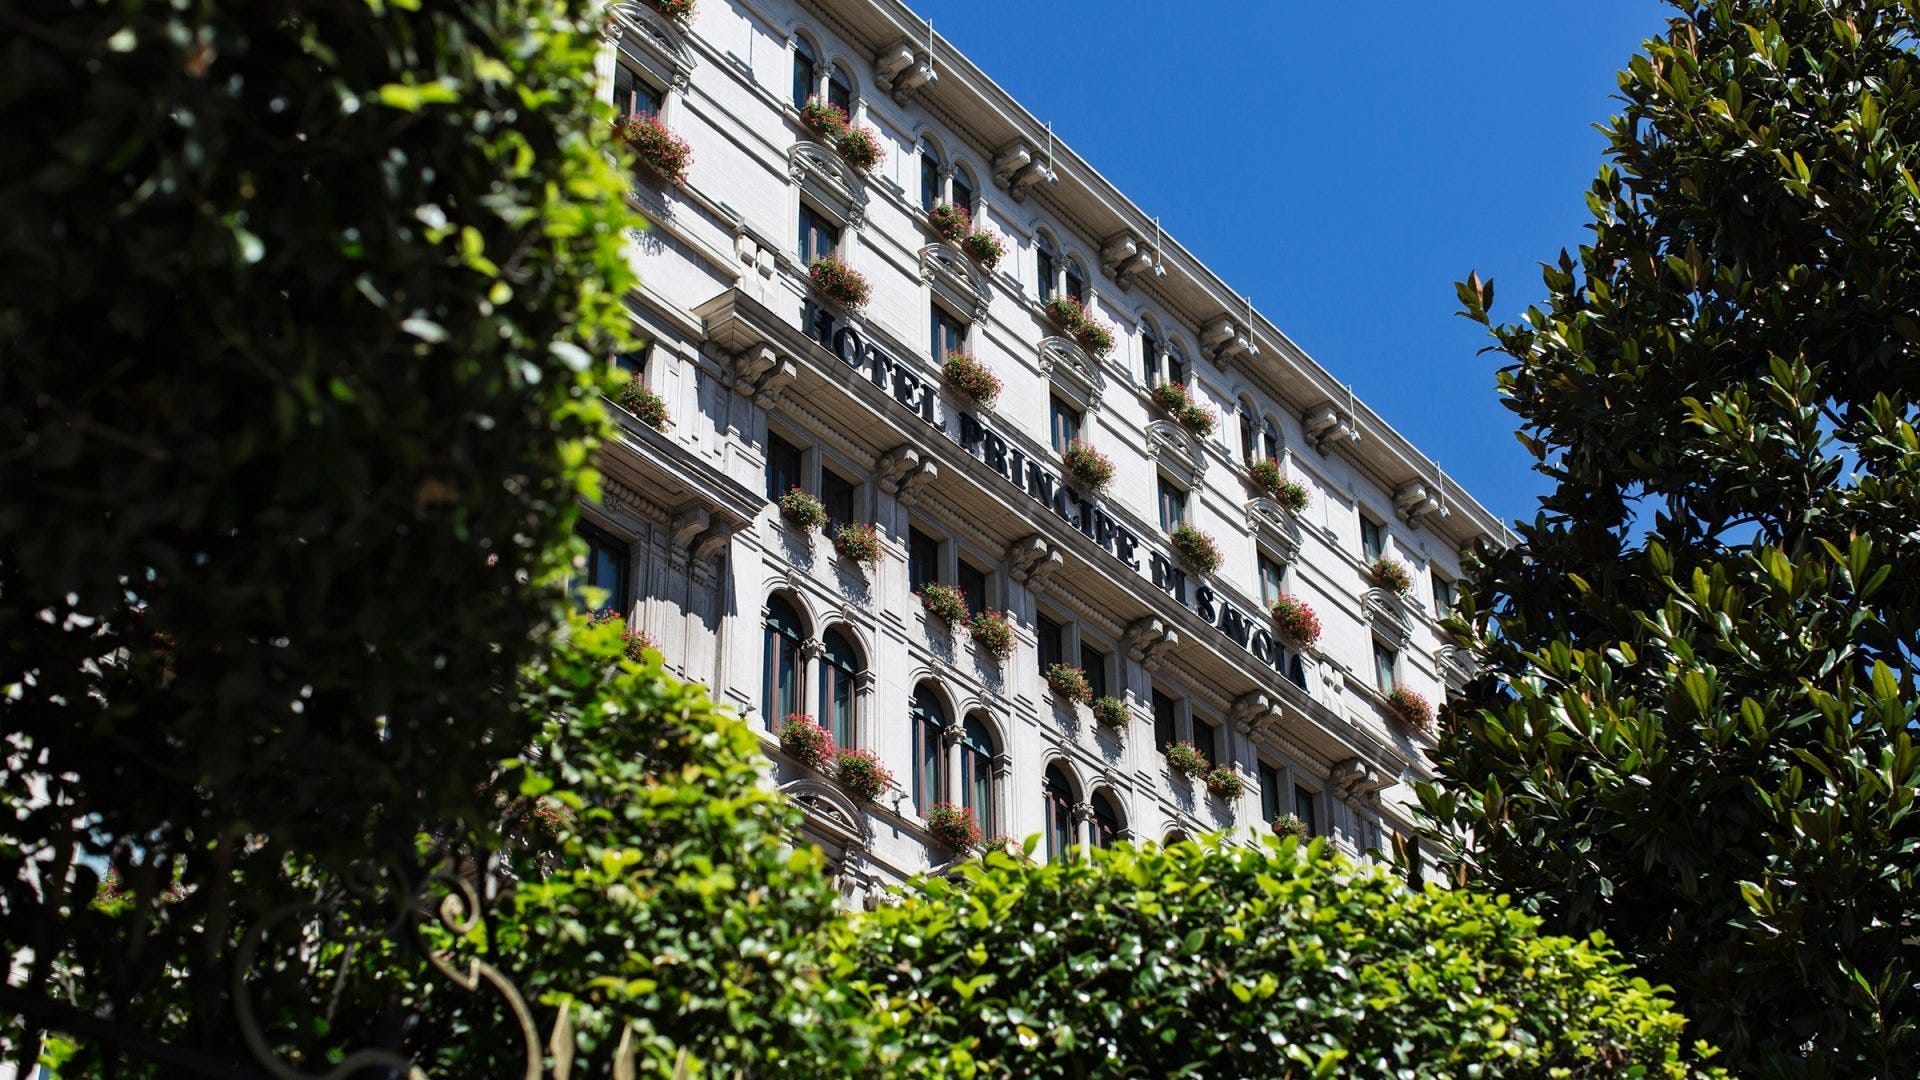 L'Hotel Principe di Savoia di Milano  Come festeggiare la Pasqua? Con un brunch all'Acanto del Principe di Savoia